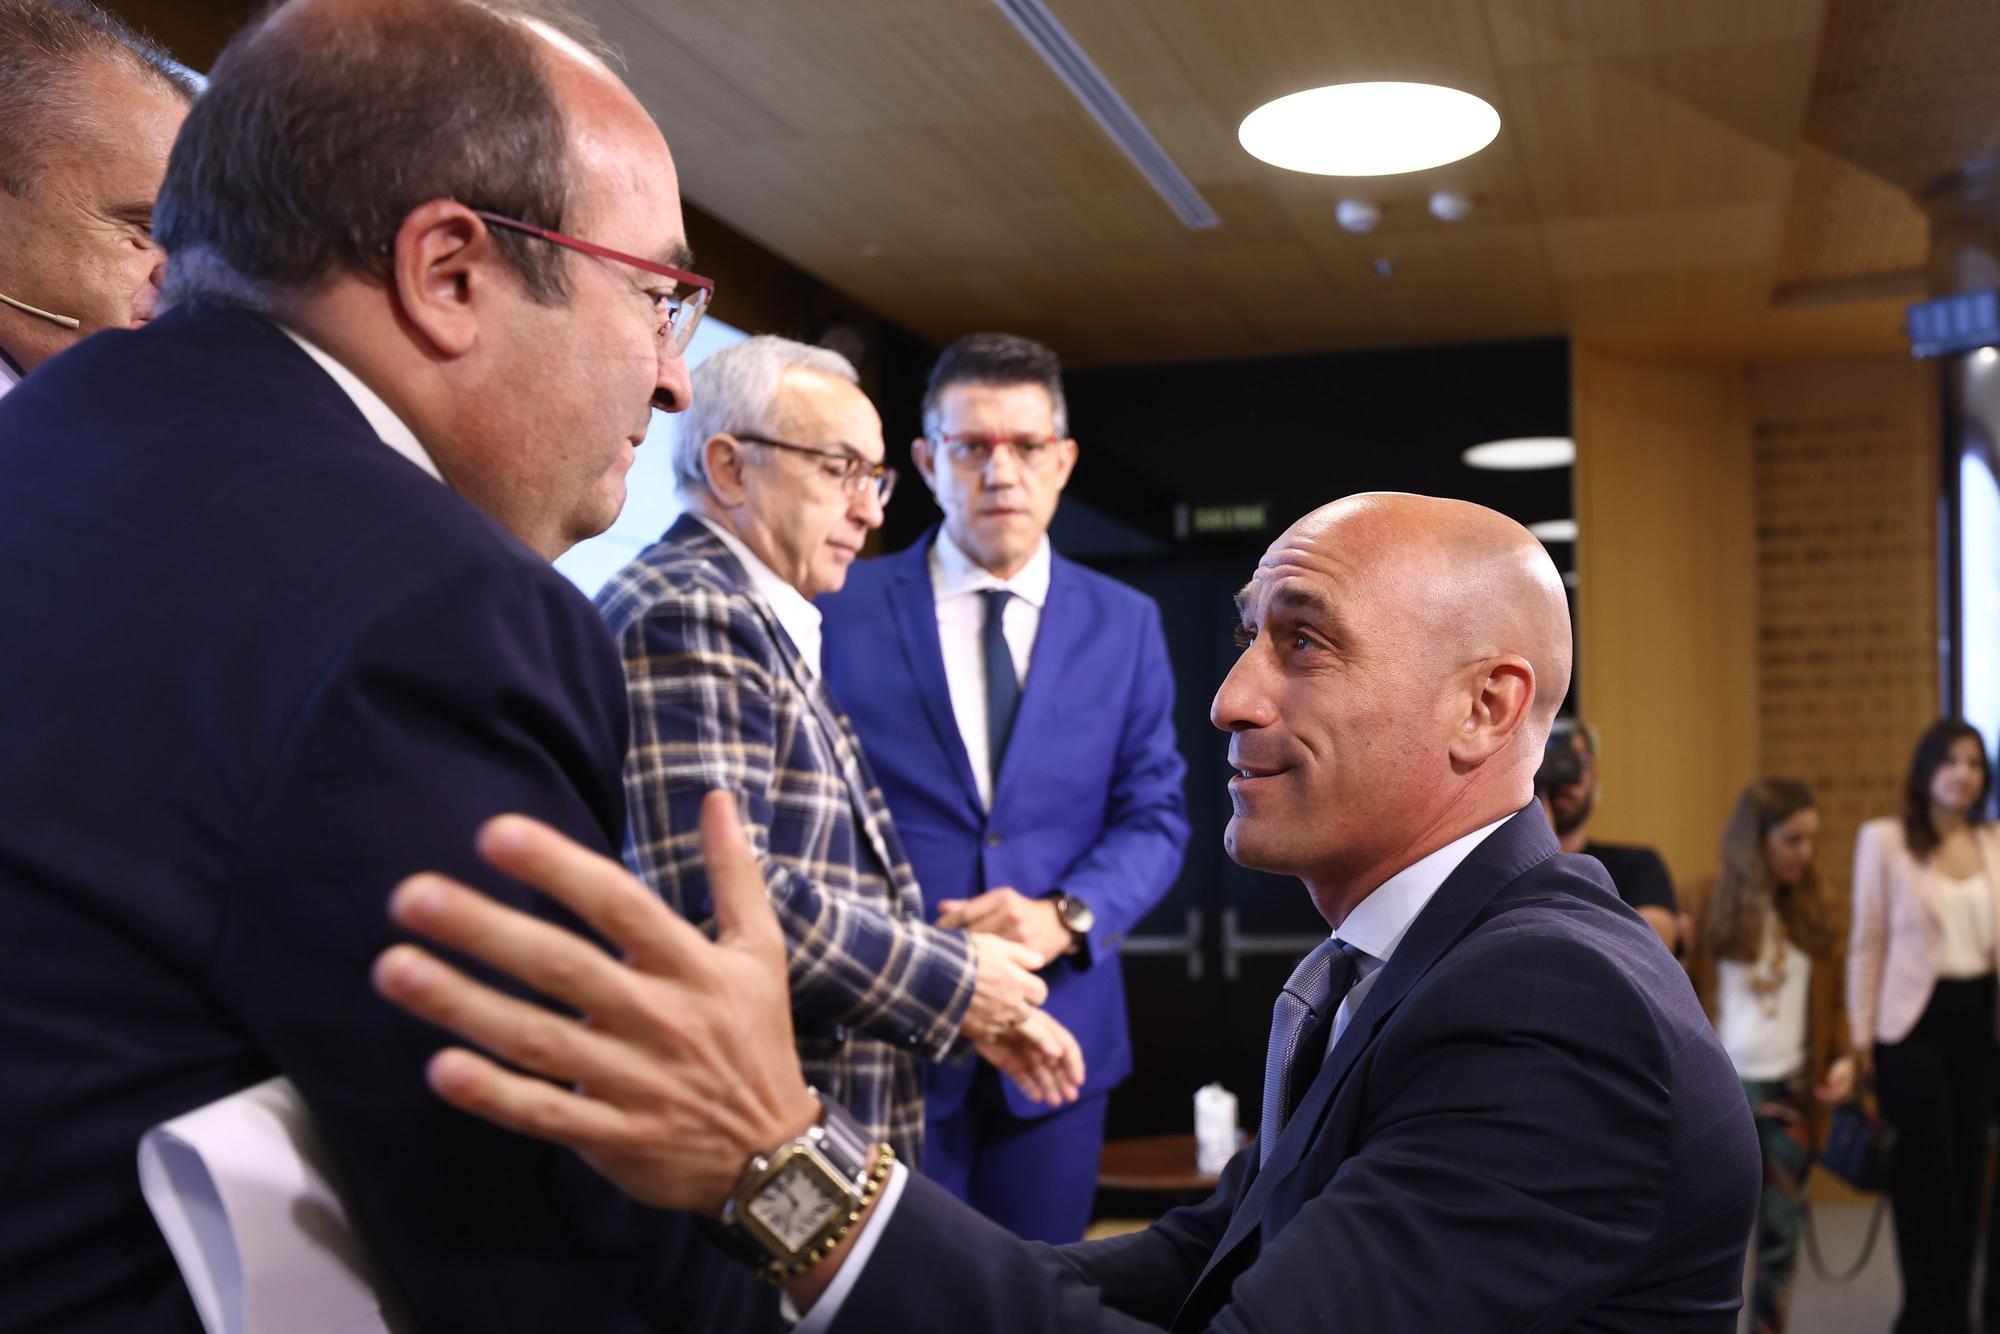 El presidente de la RFEF, Luis Rubiales, saluda al ministro Miquel Iceta en presencia del presidente del CSD, José Manuel Franco, en un acto reciente.